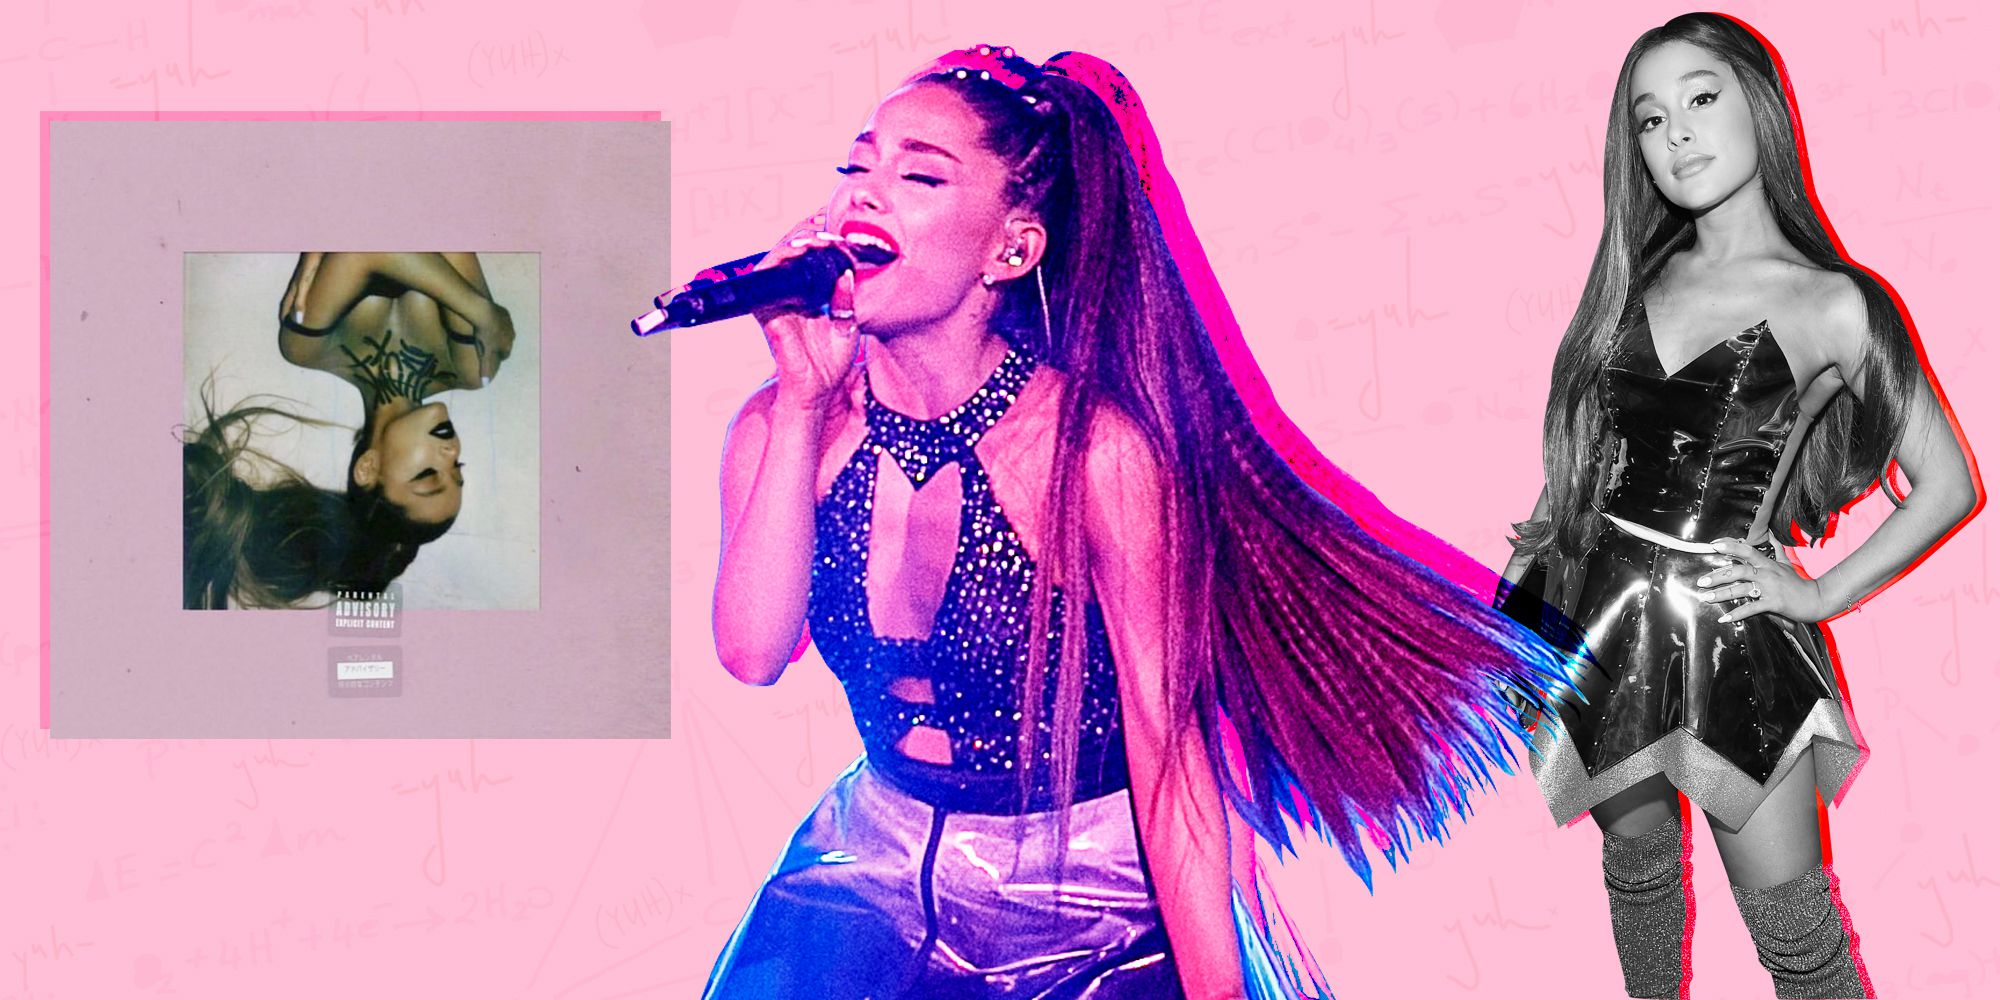 Ariana Grande tung album mới càn quét hàng loạt BXH, lấy lòng hầu hết giới chuyên môn